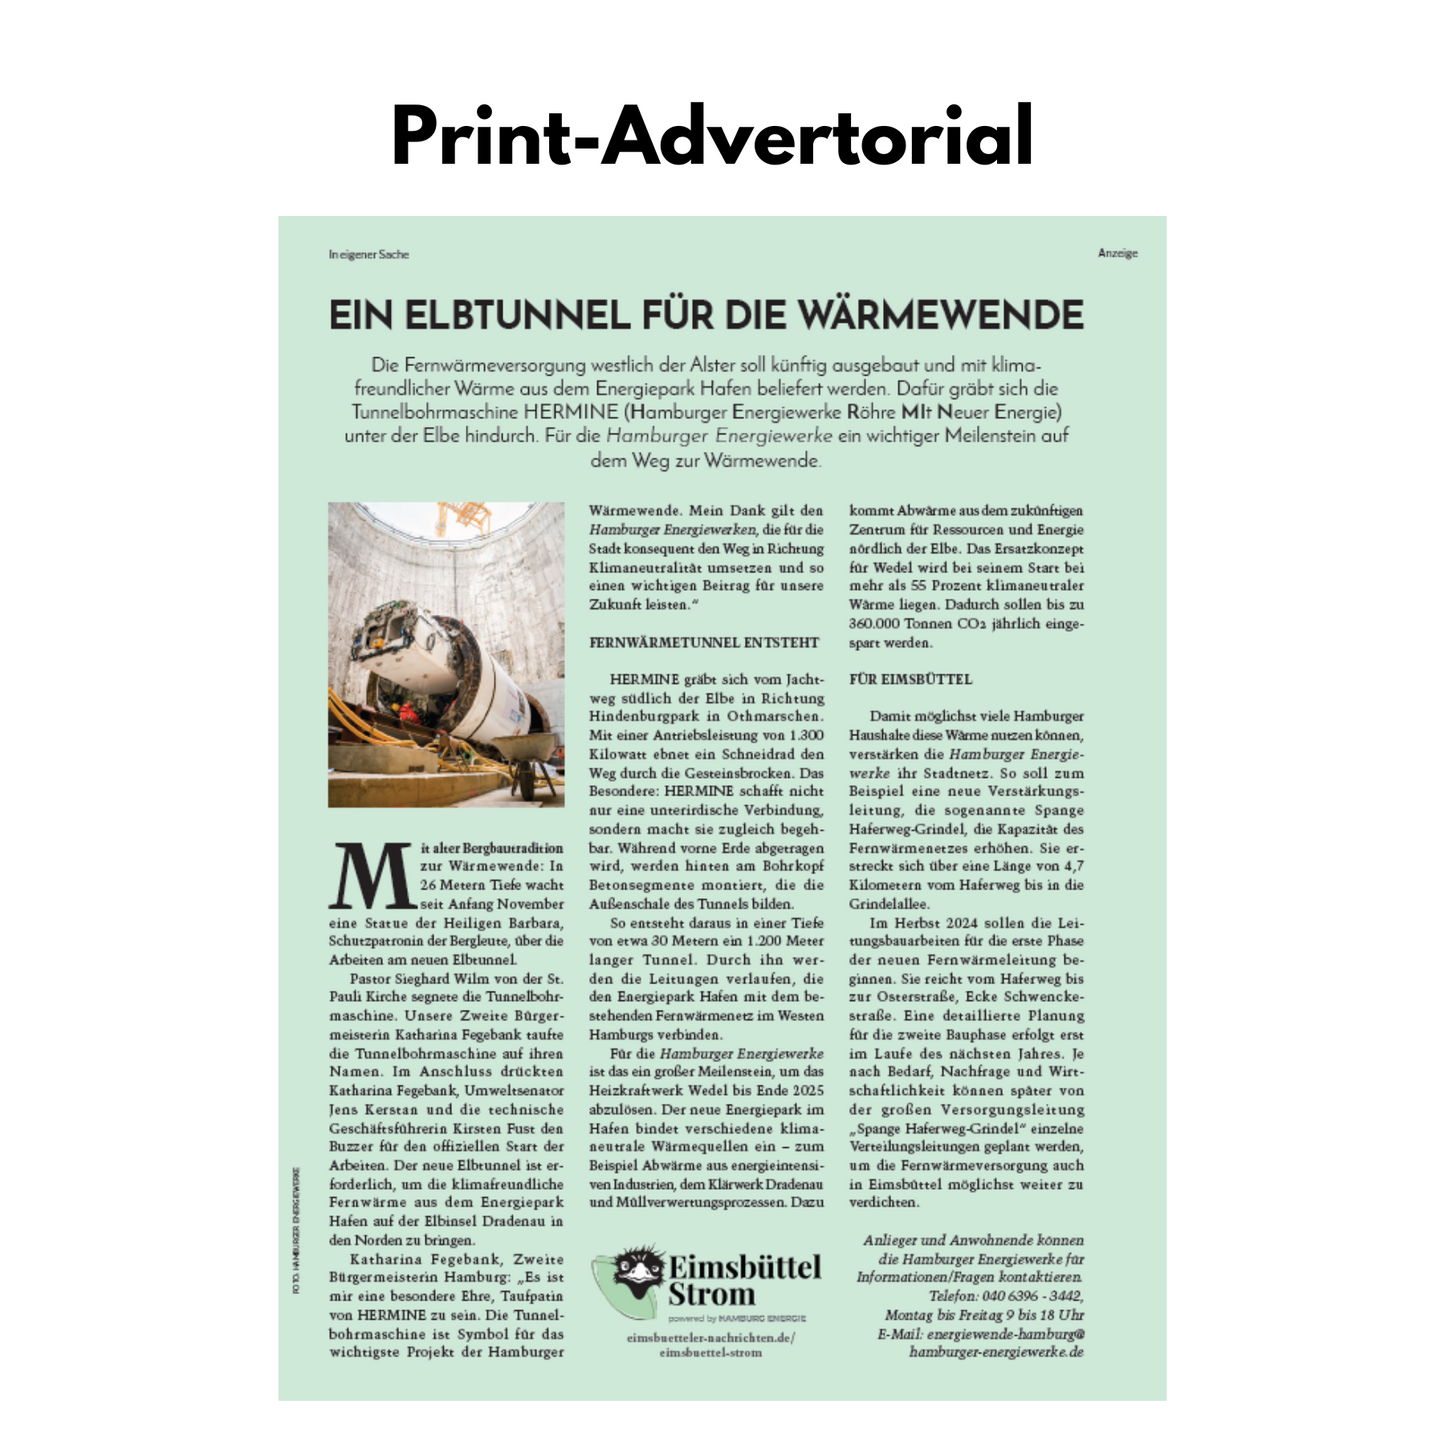 Print-Online-Advertorial